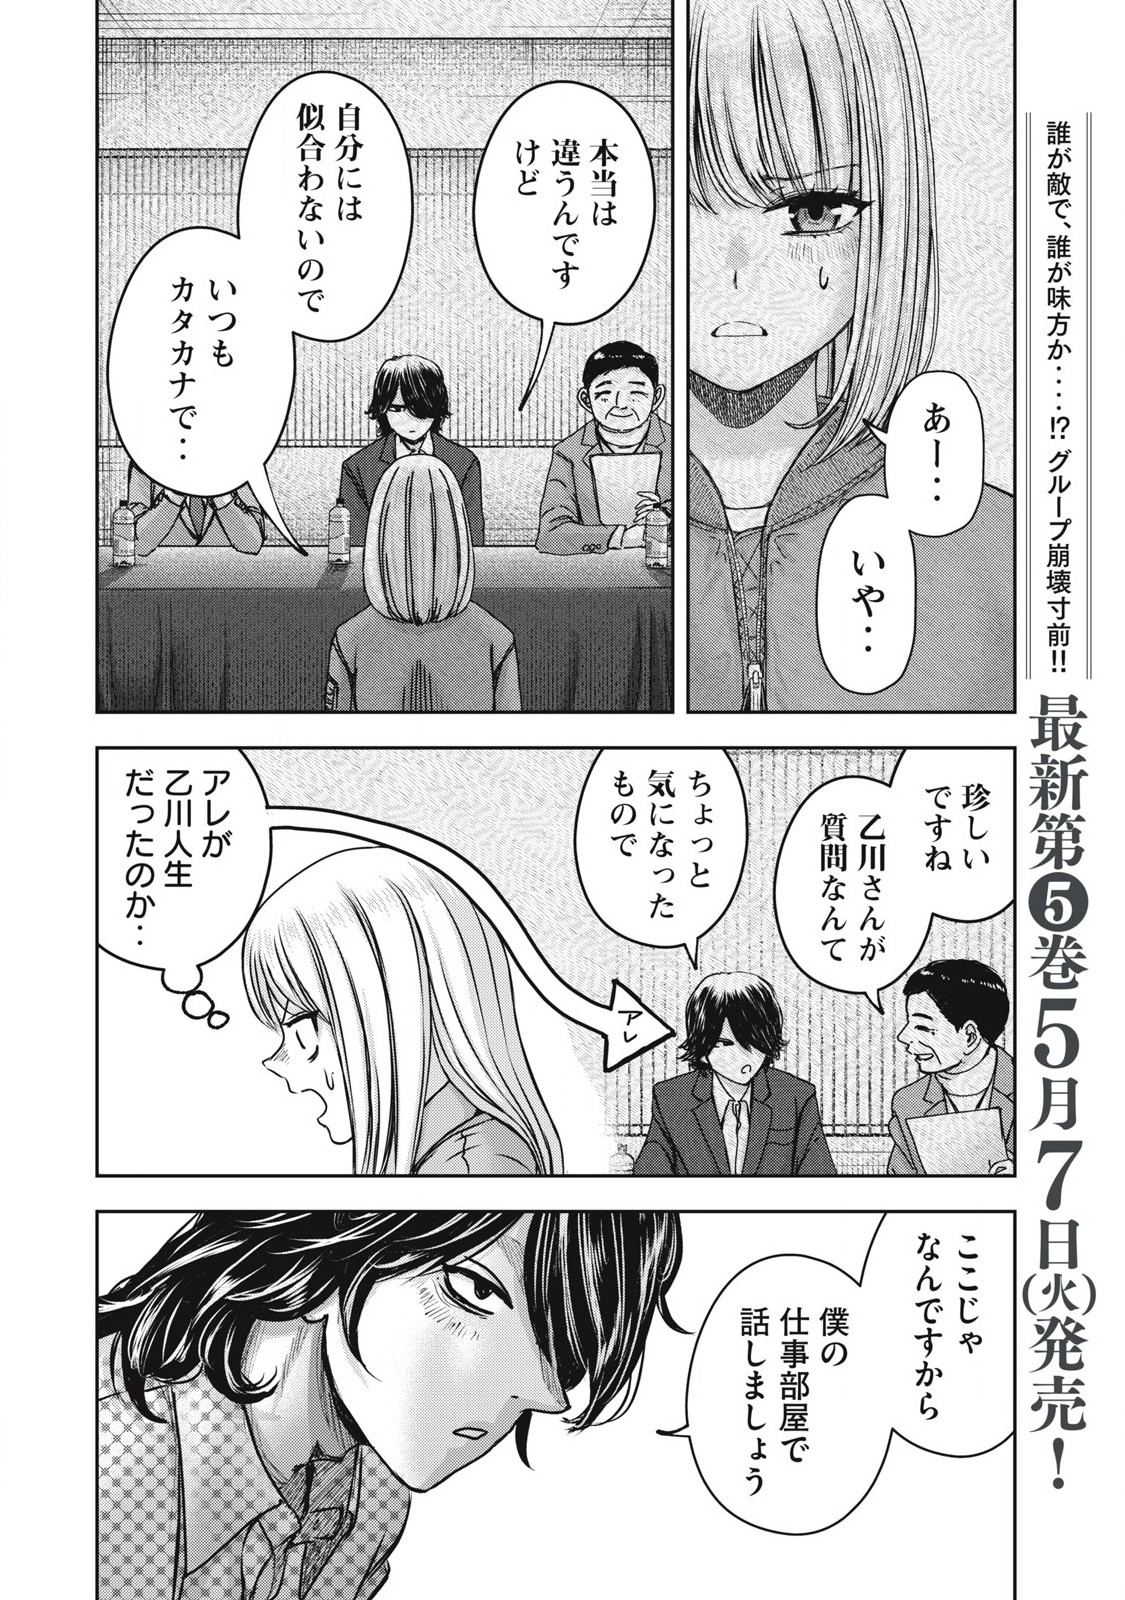 Watashi no Arika - Chapter 52 - Page 4